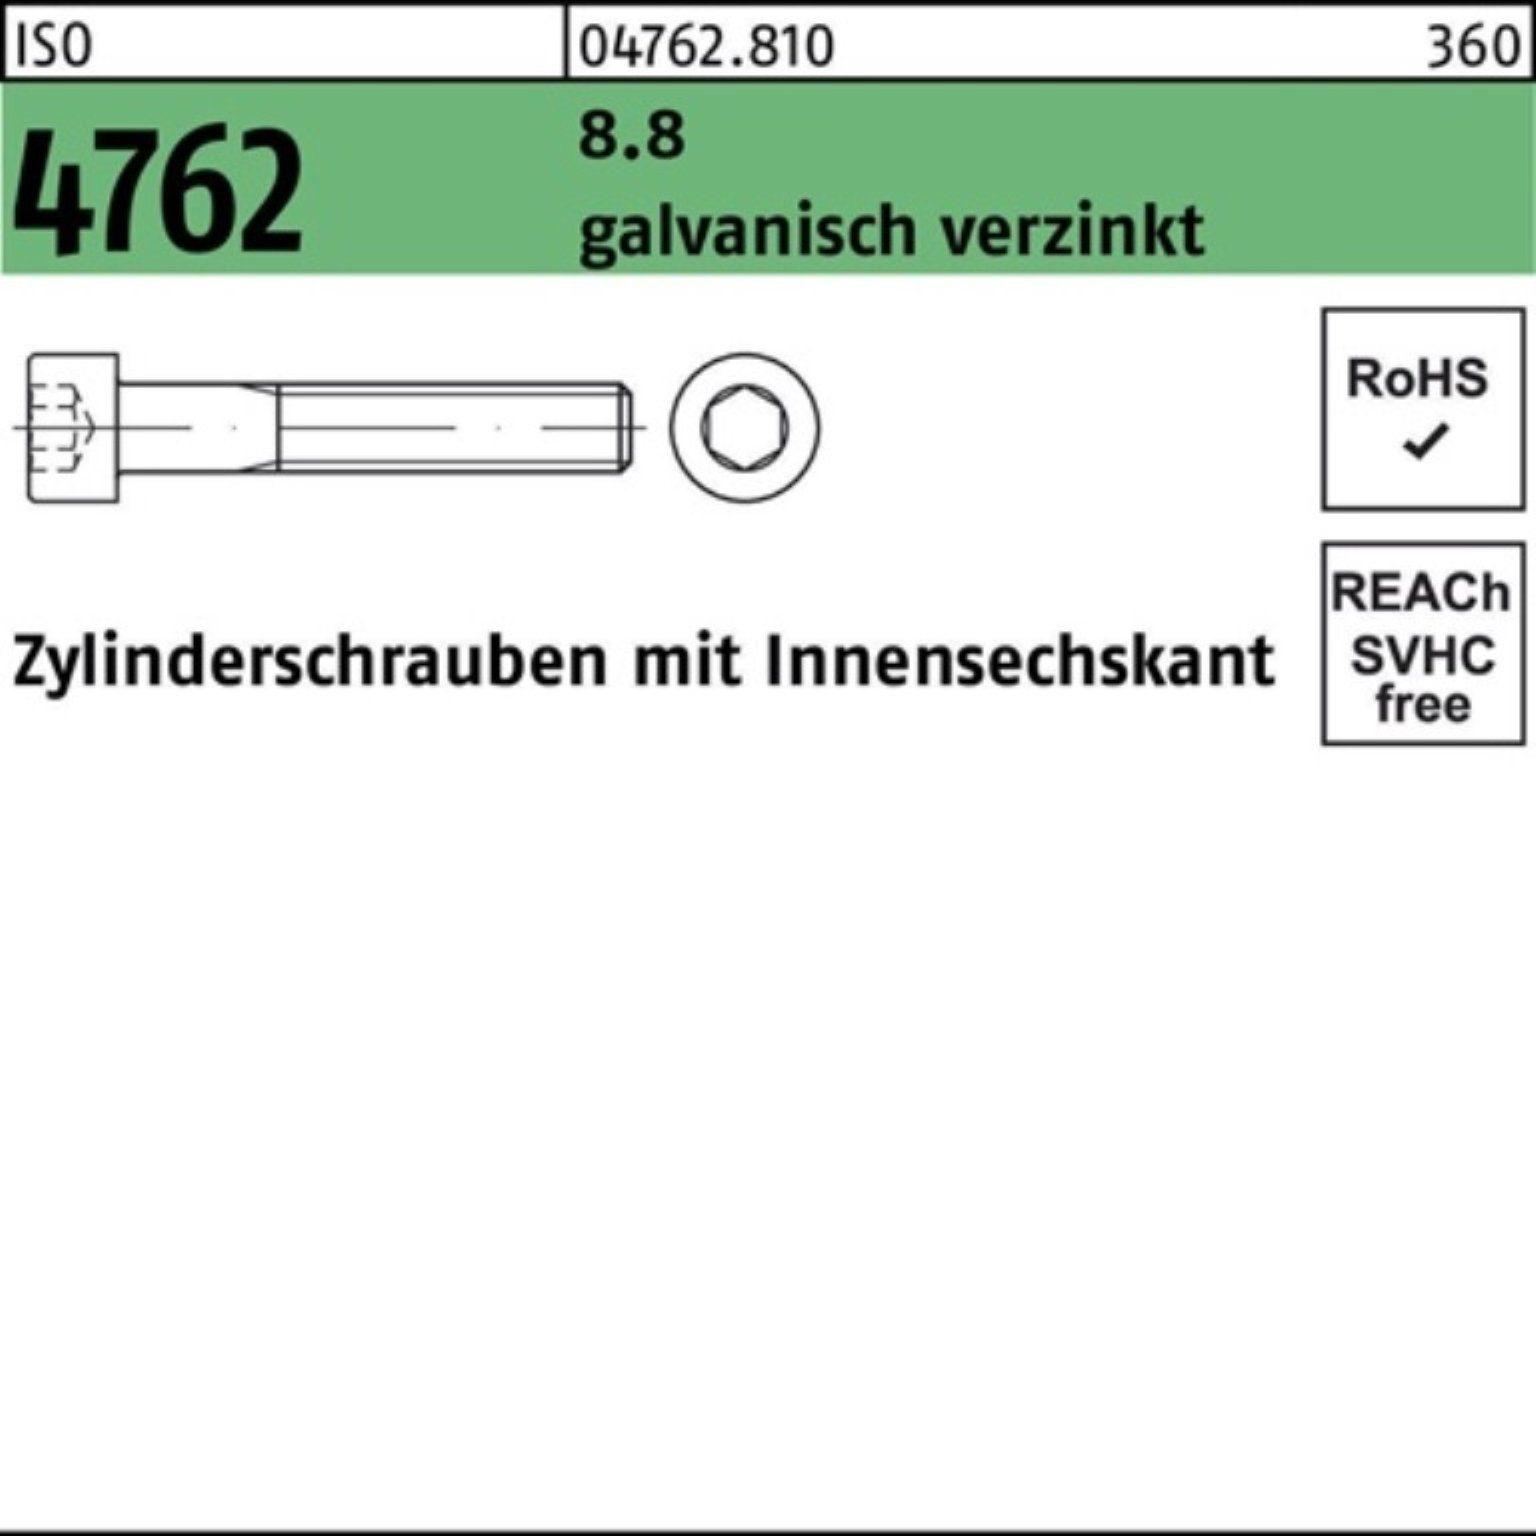 Pack Zylinderschraube 8.8 Reyher Innen-6kt ISO Zylinderschraube galv.verz. 100er 4762 M14x120